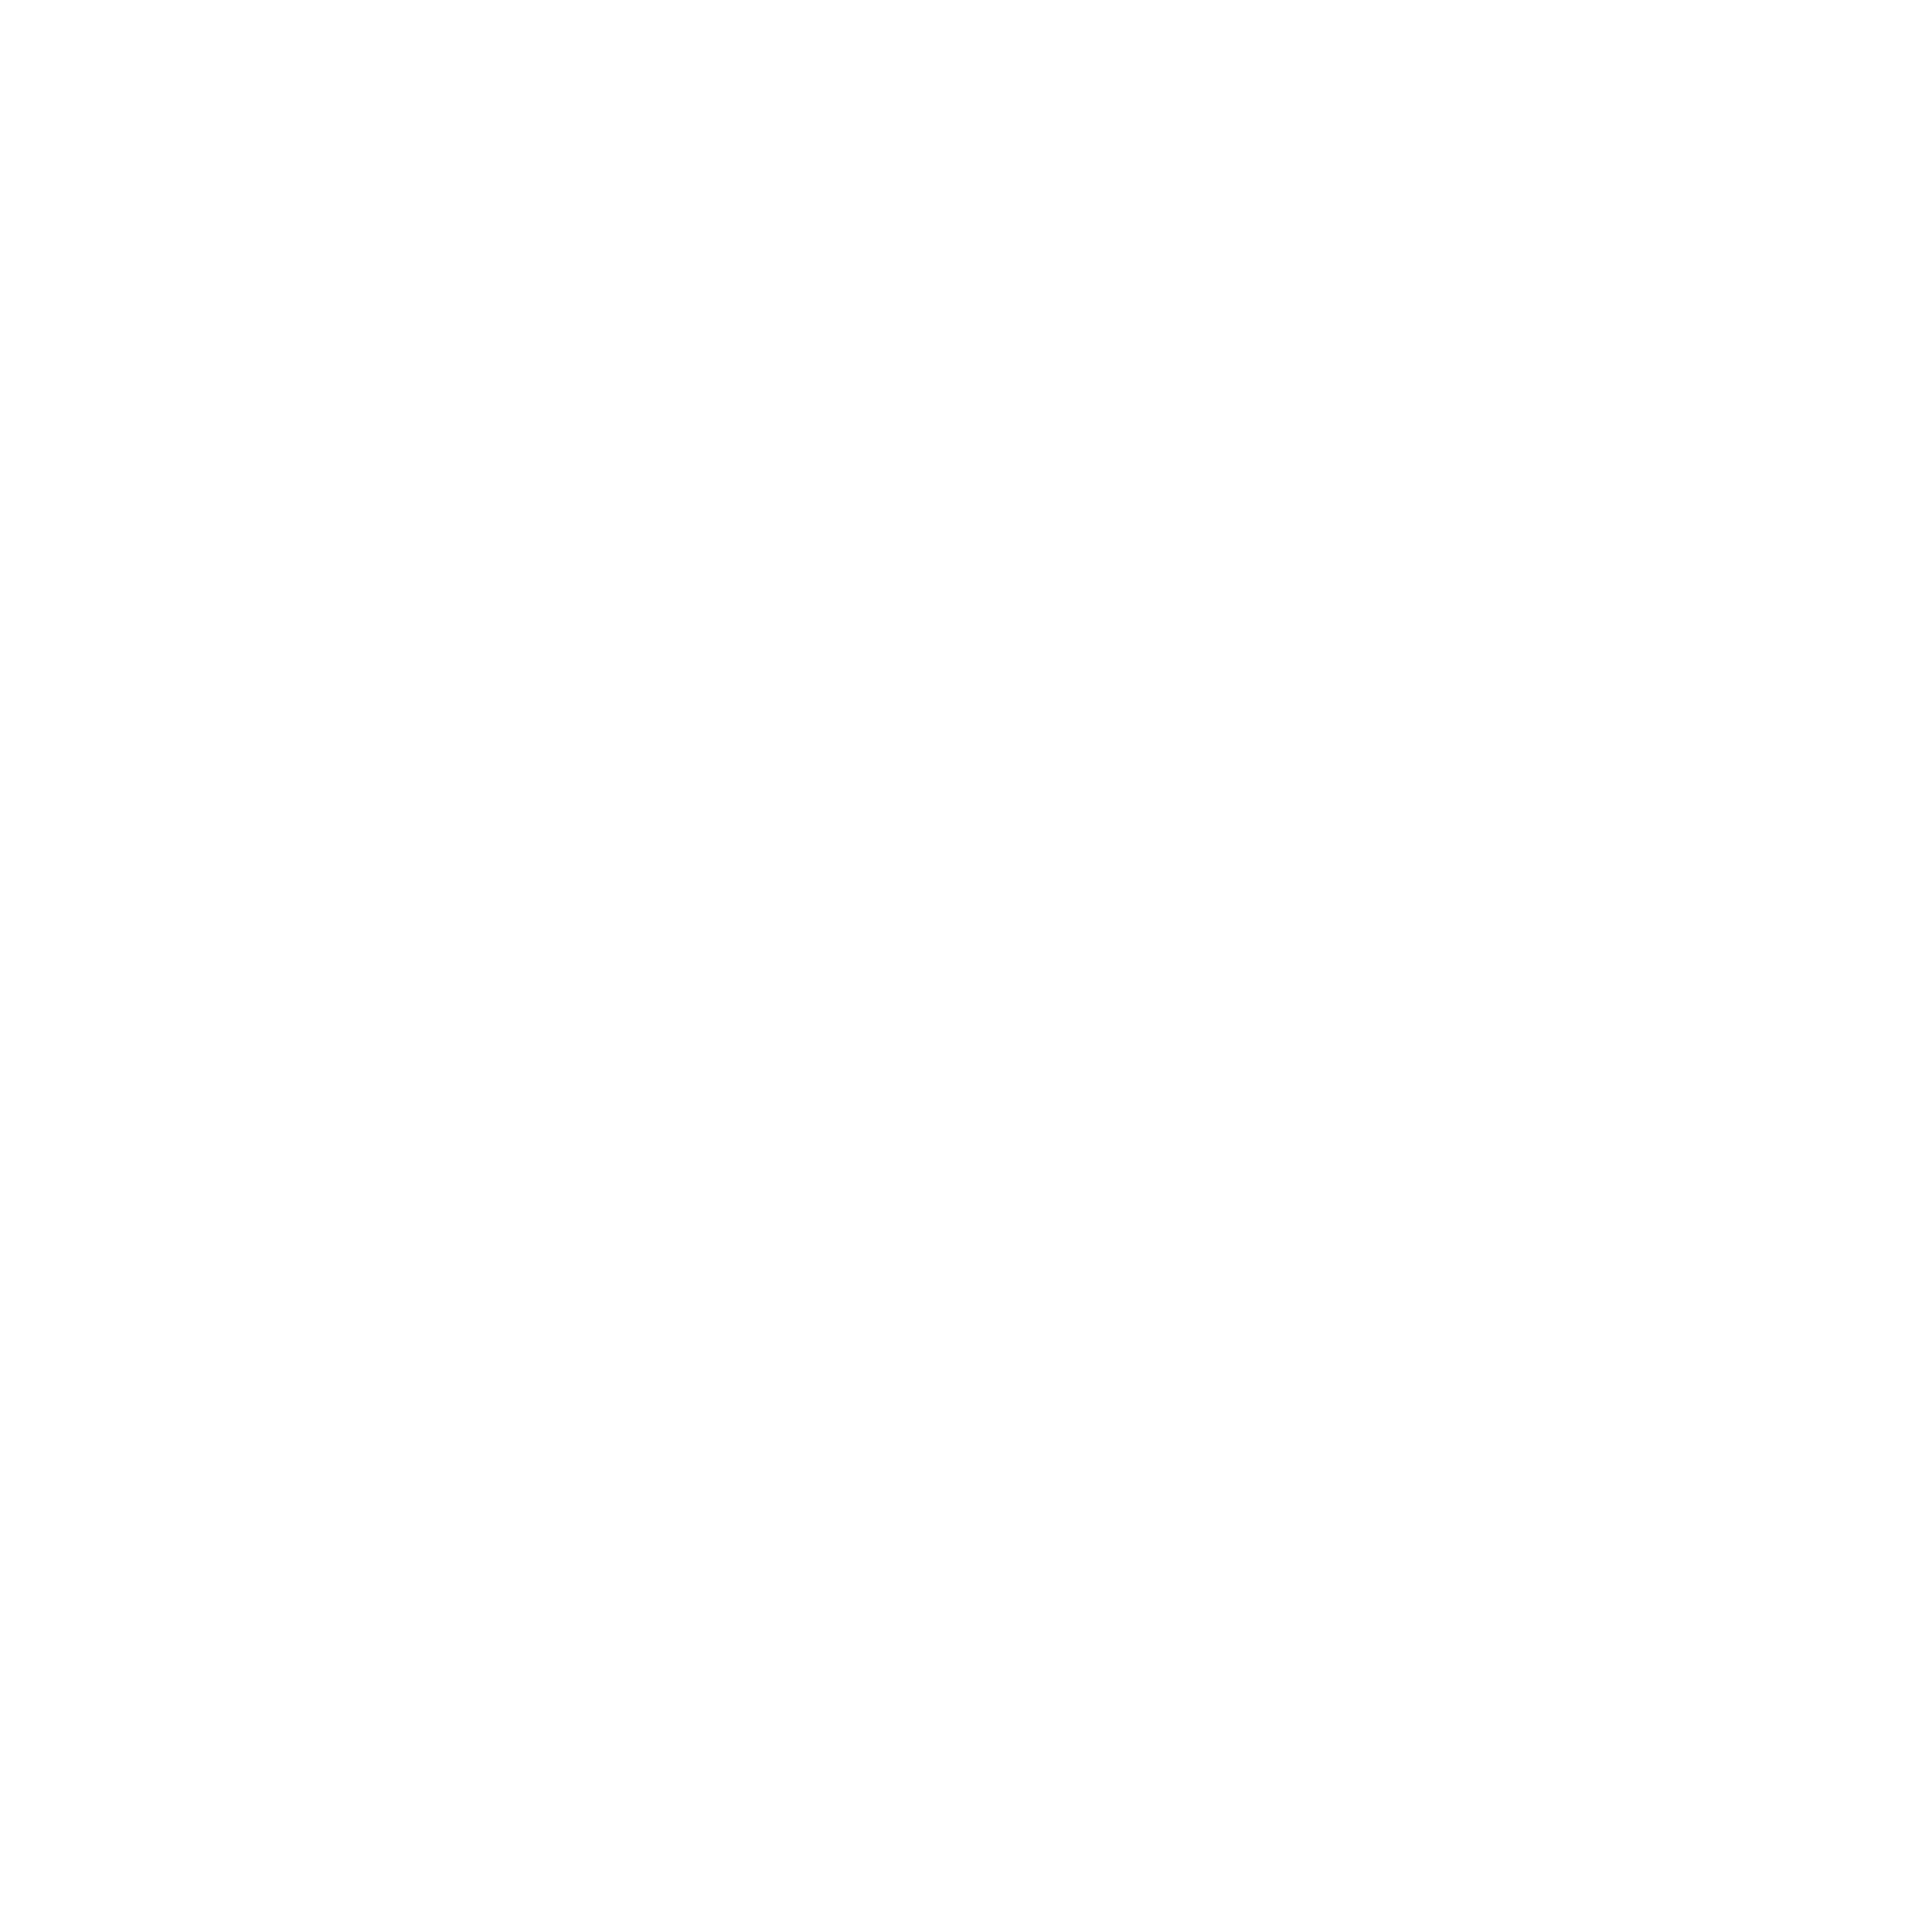 Perfil de LinkedIn de Adif